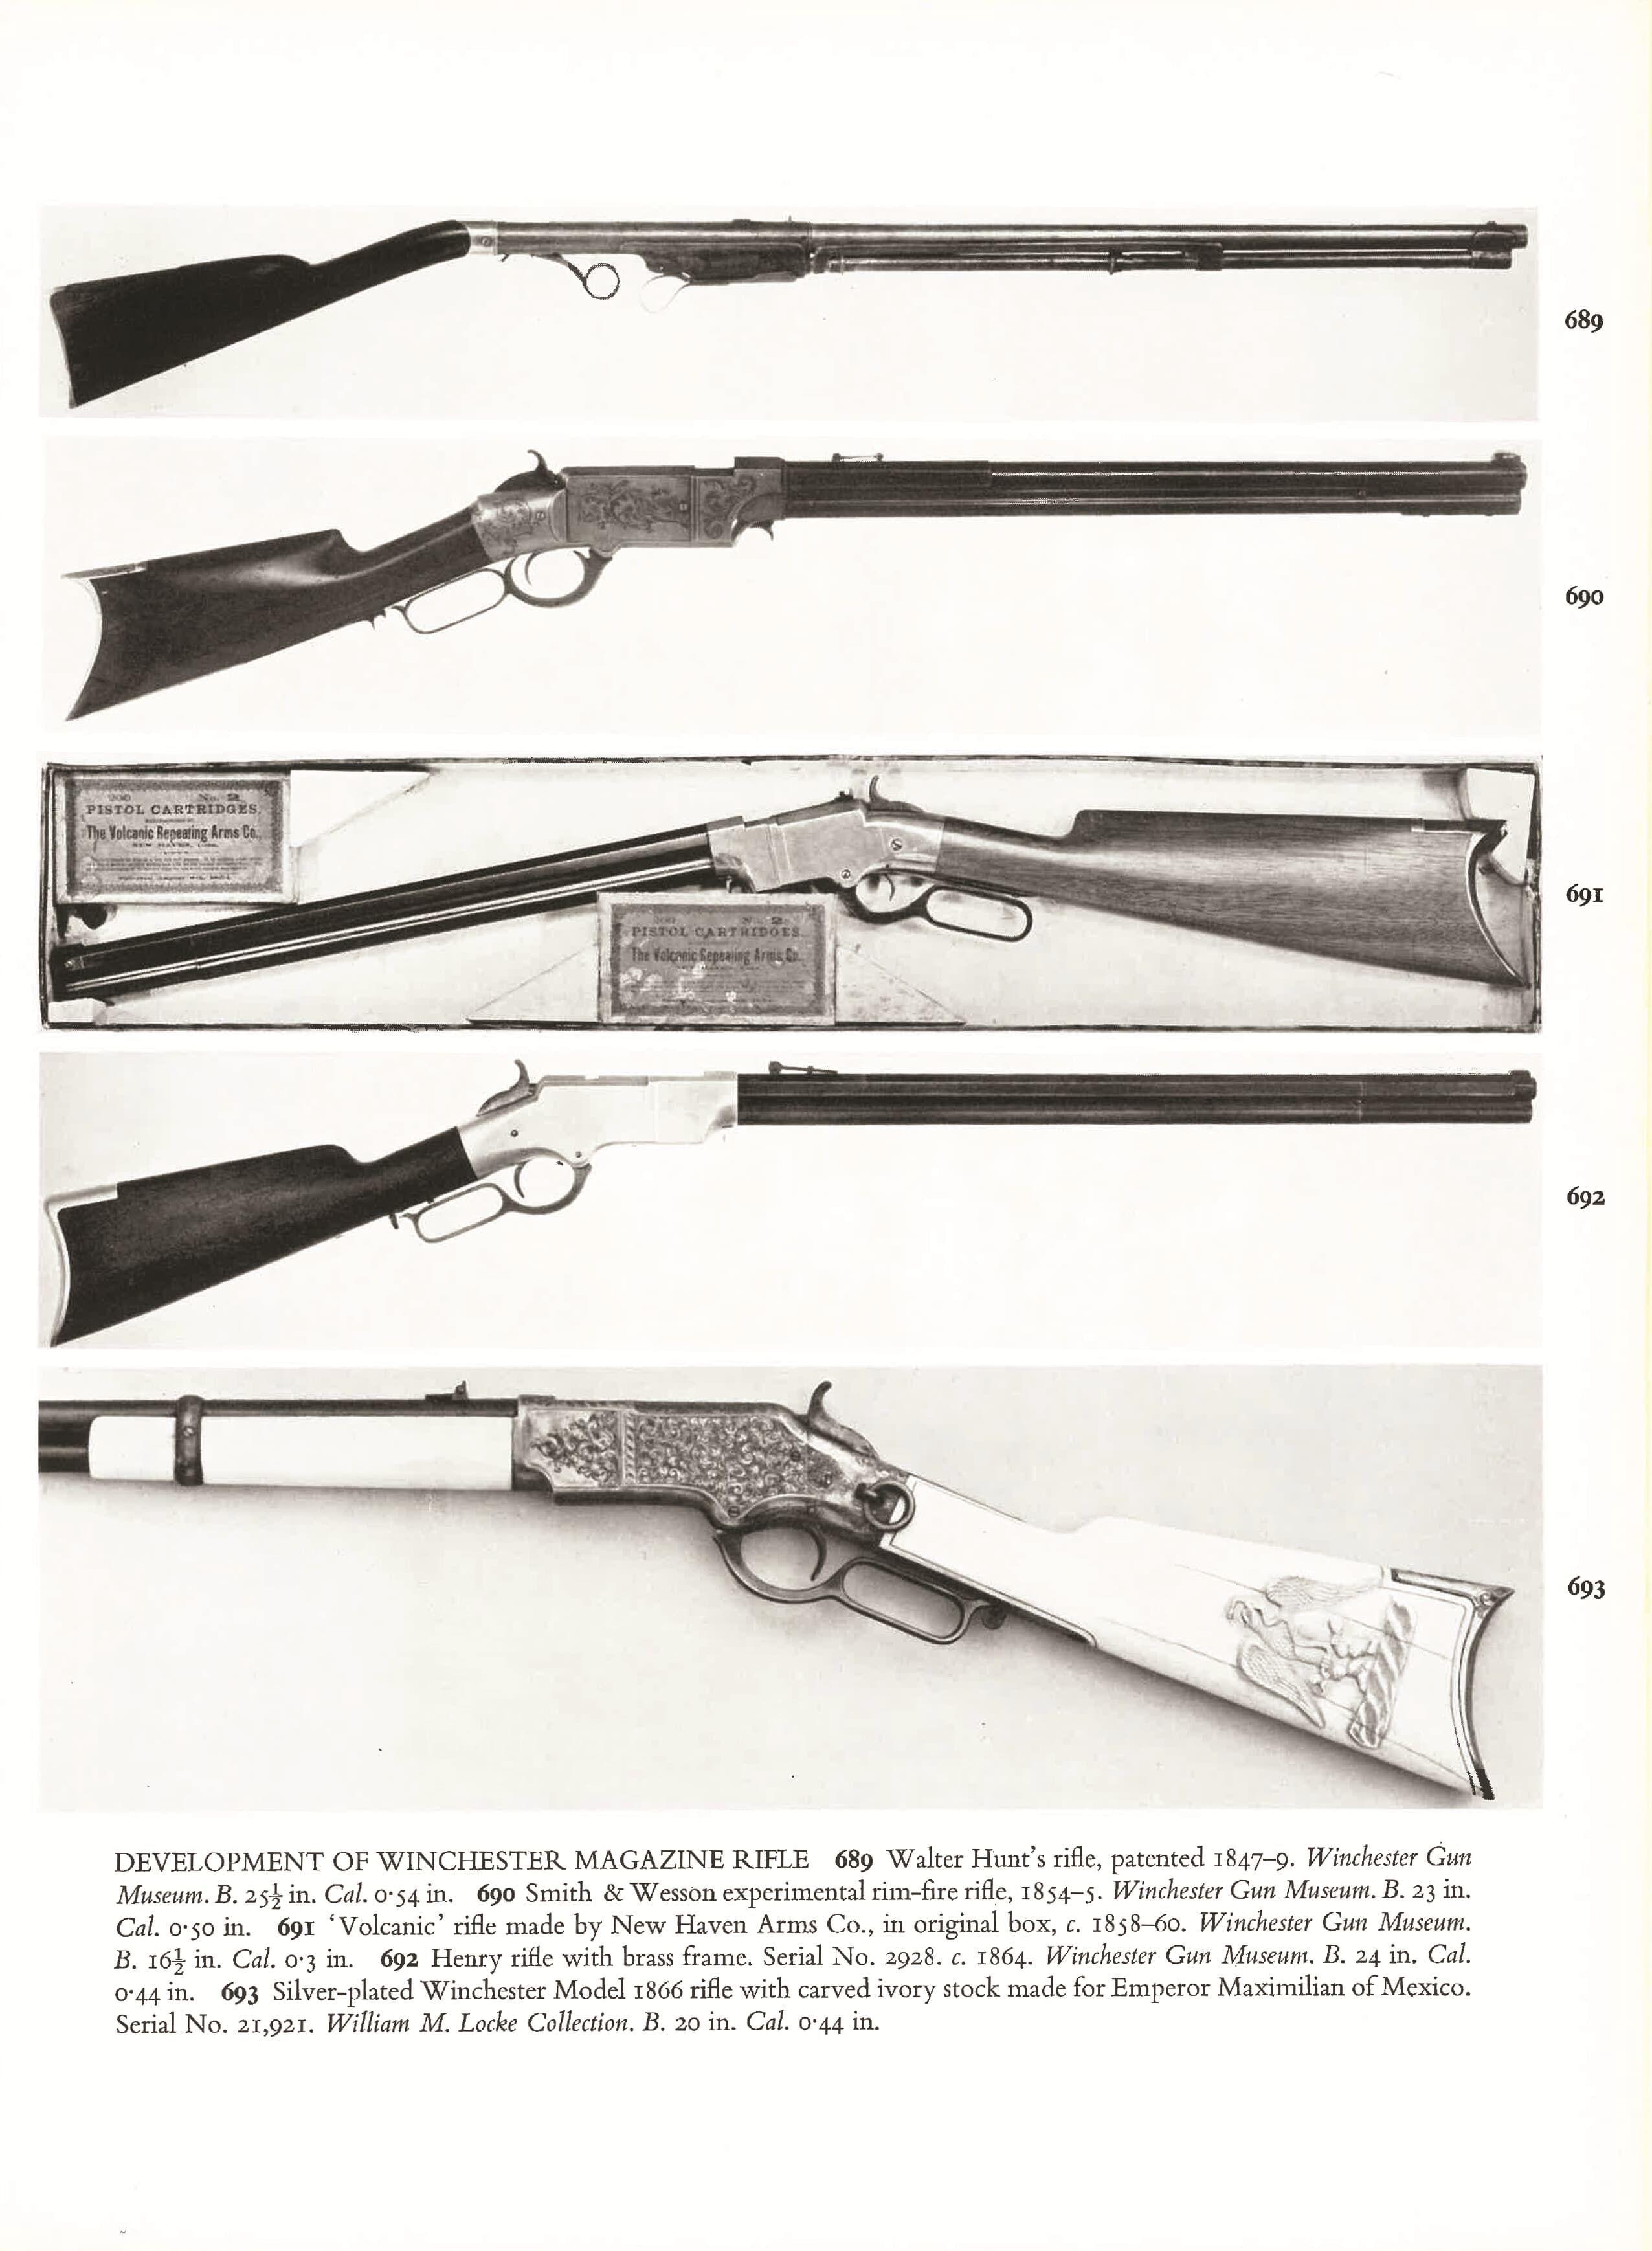 Exhibition Quality Maximilian Winchester Model 1866 Carbine